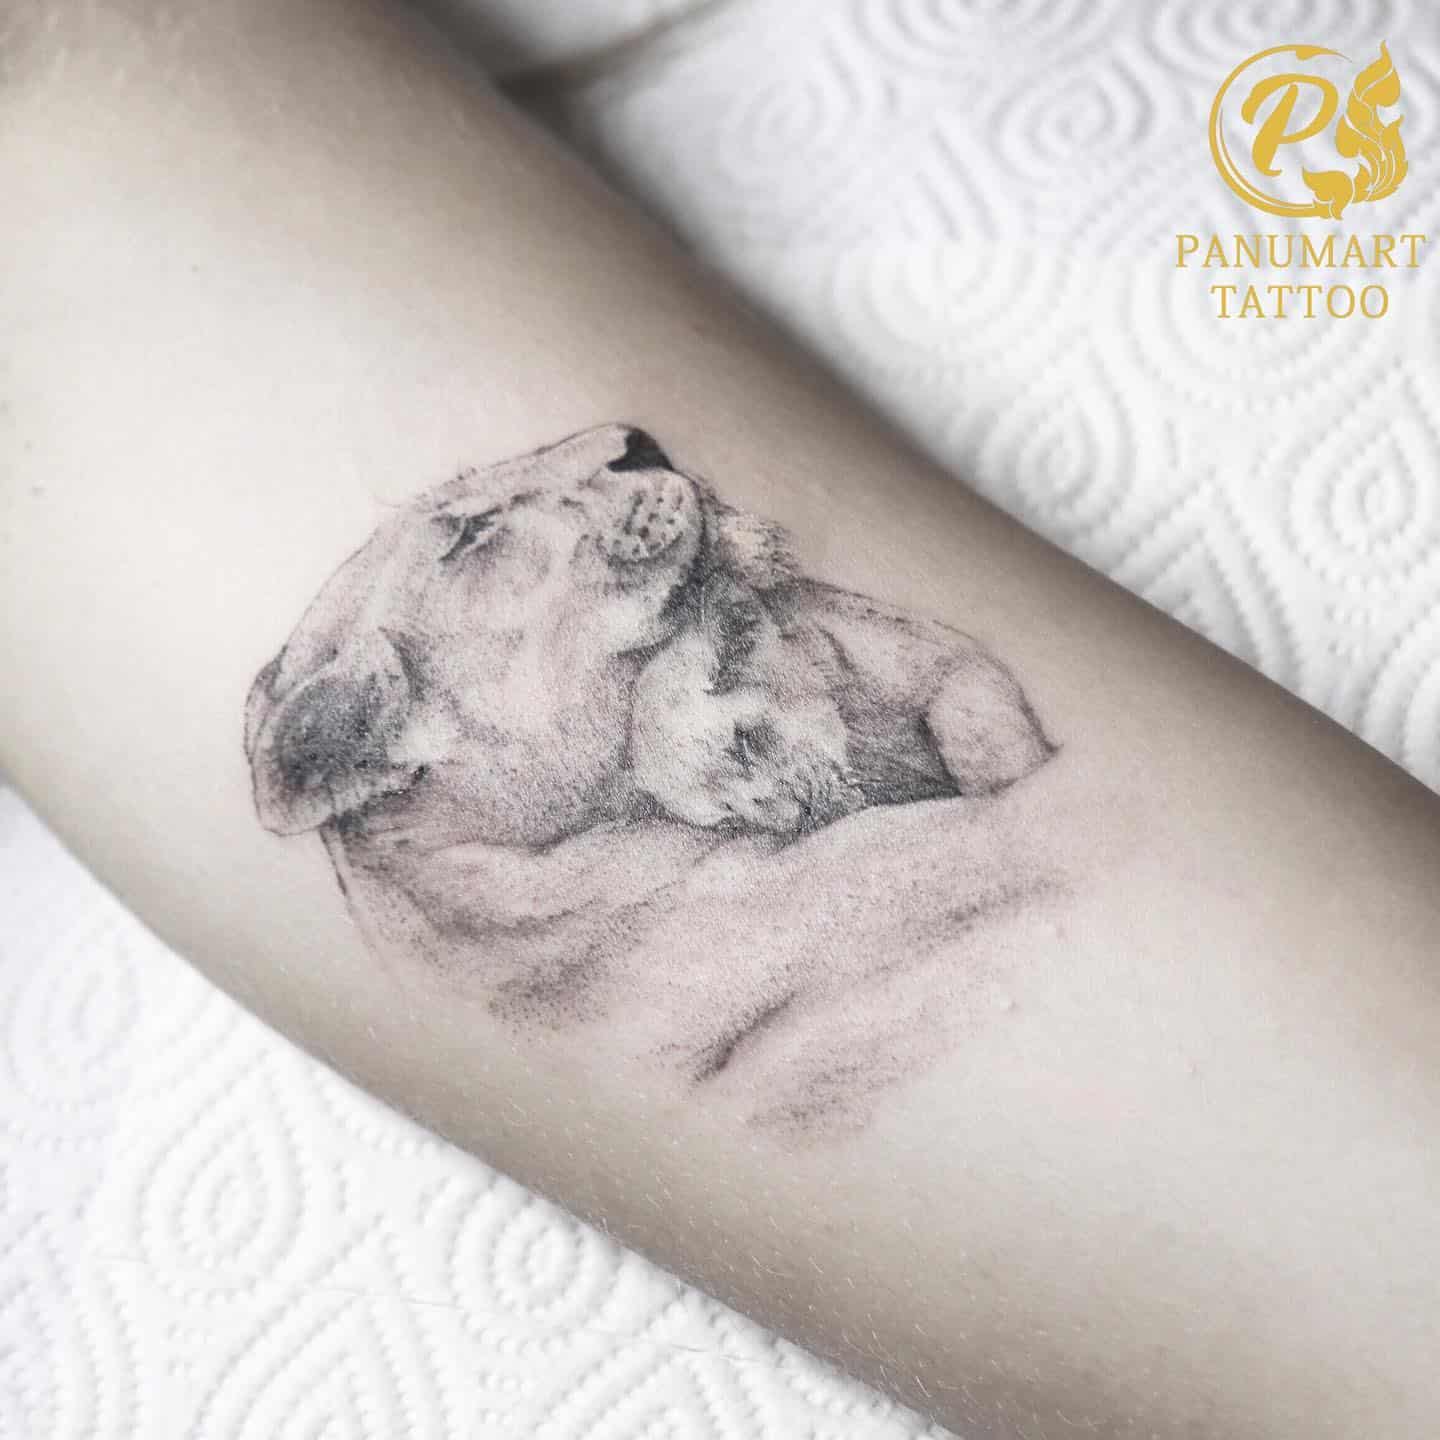 Dog Tattoo Ideas 49